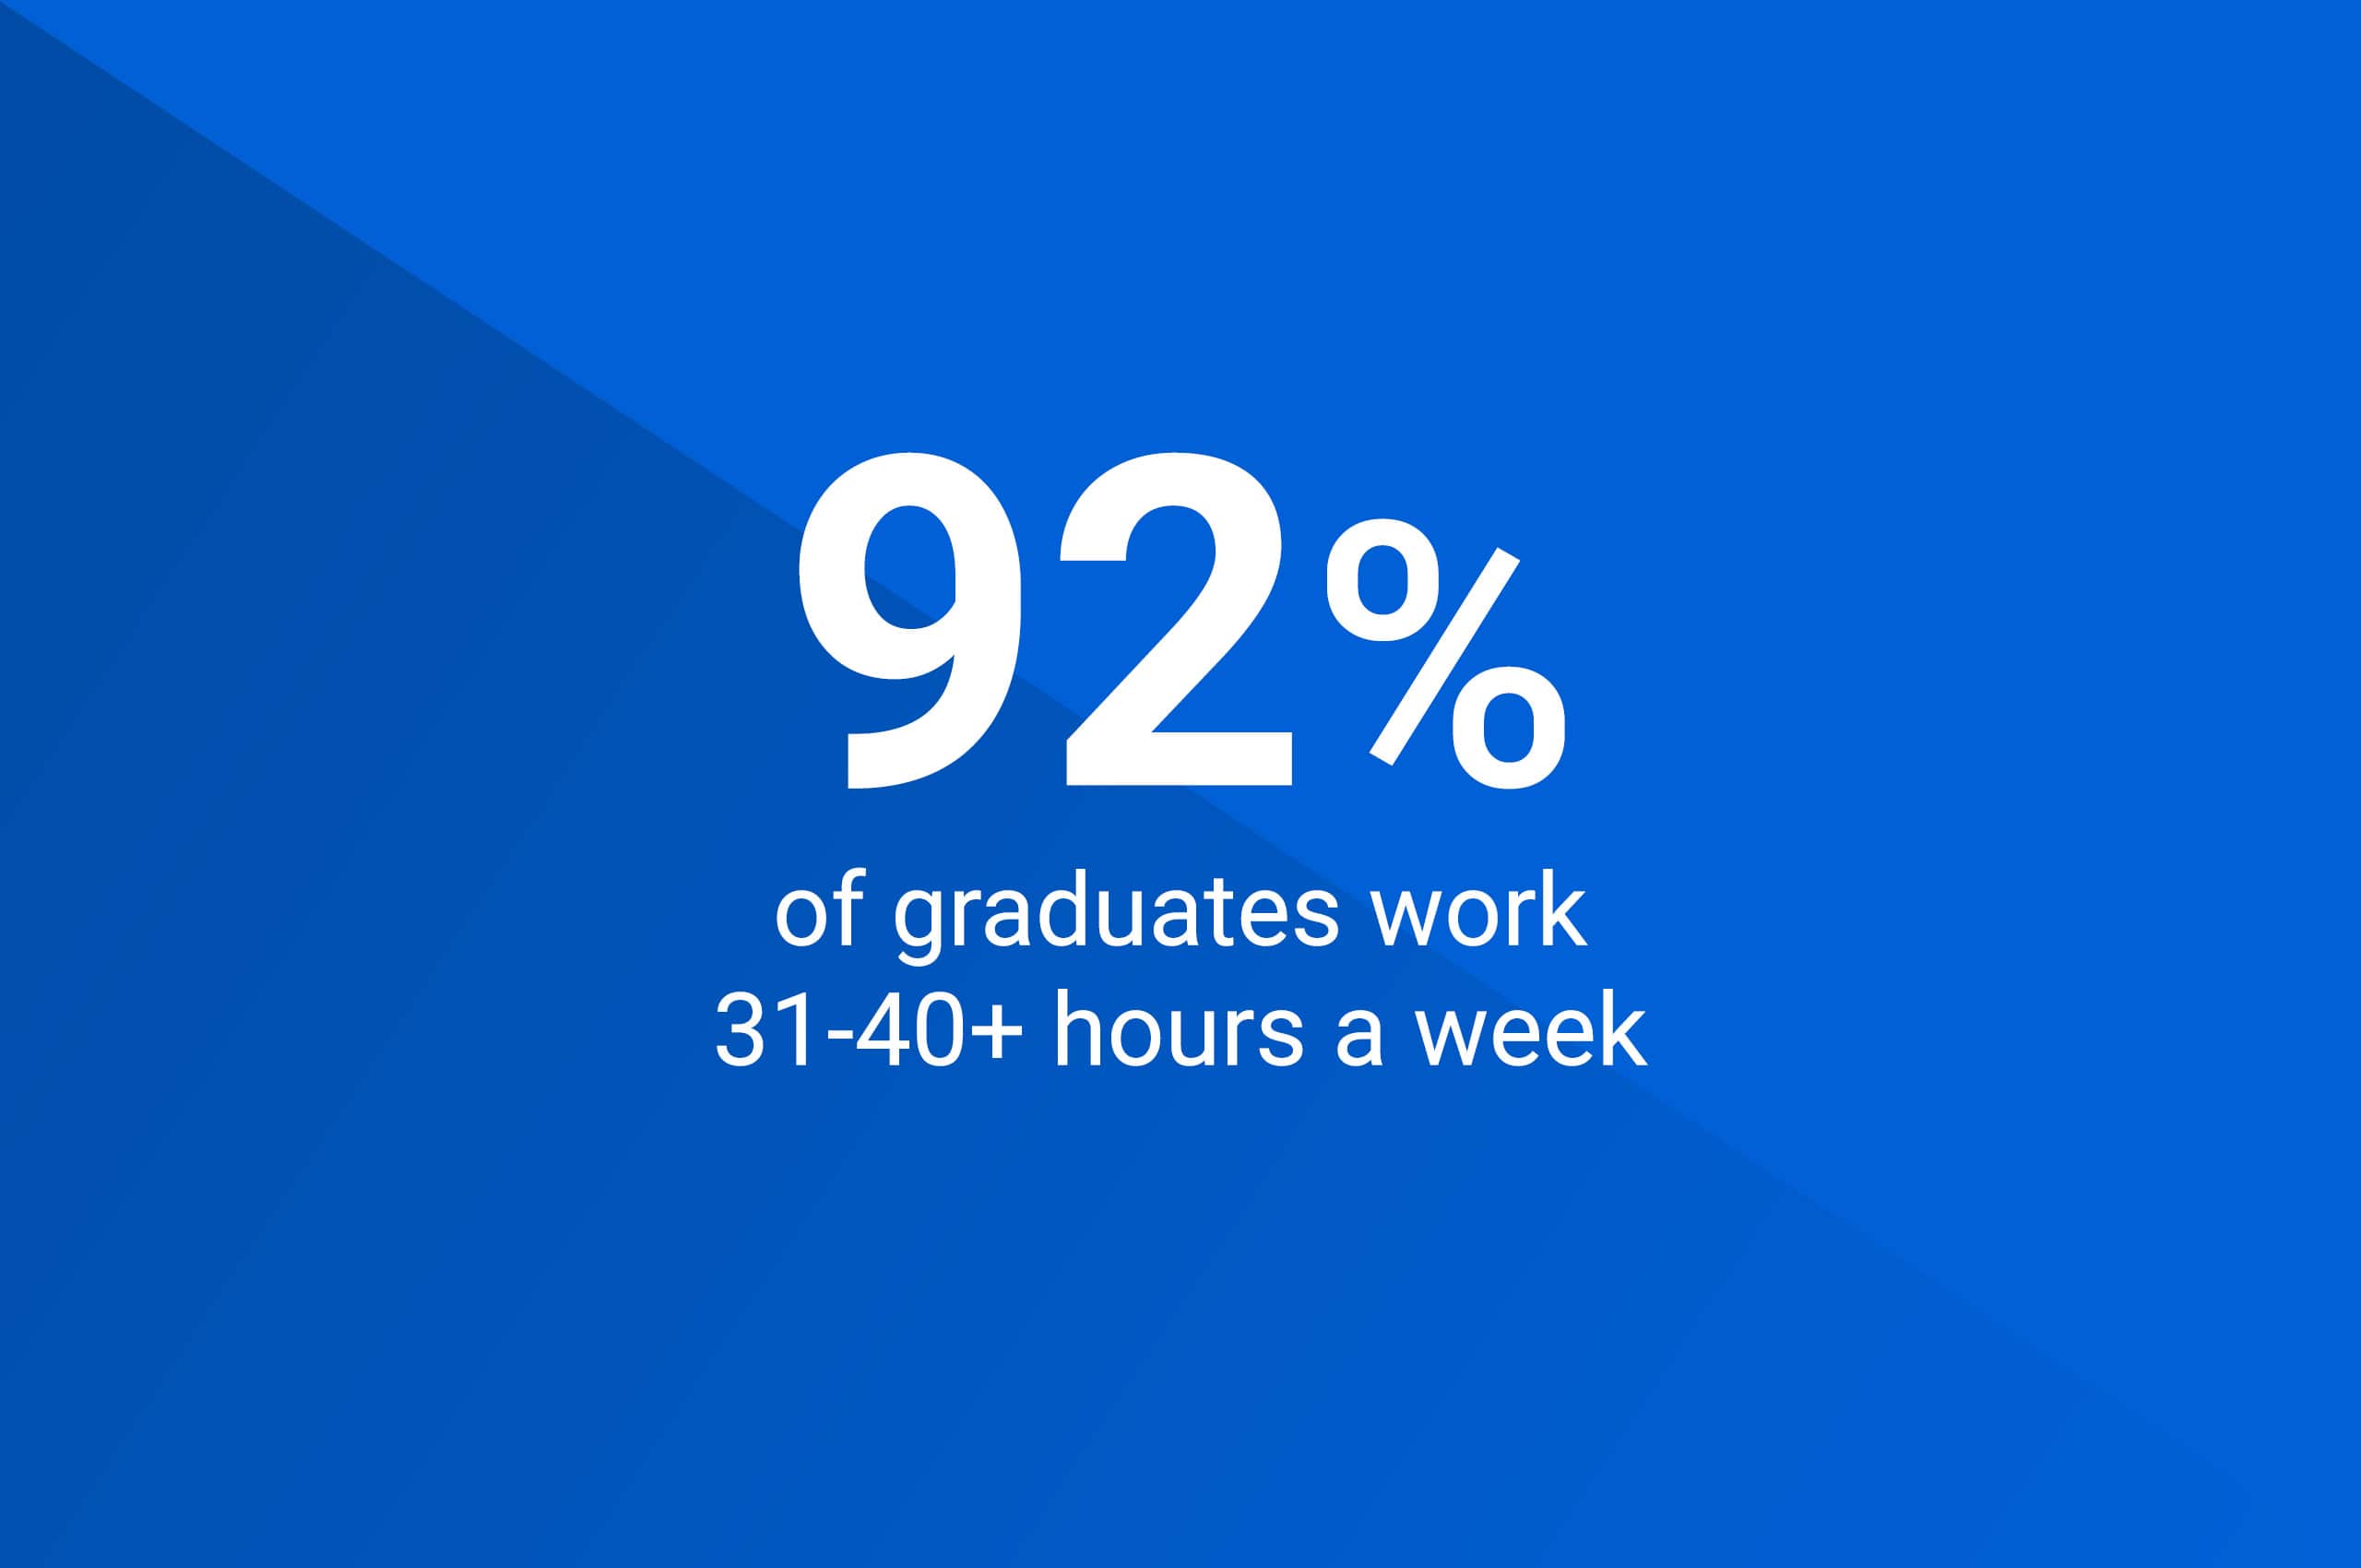 92% of graduates work 31-40 plus hours a week